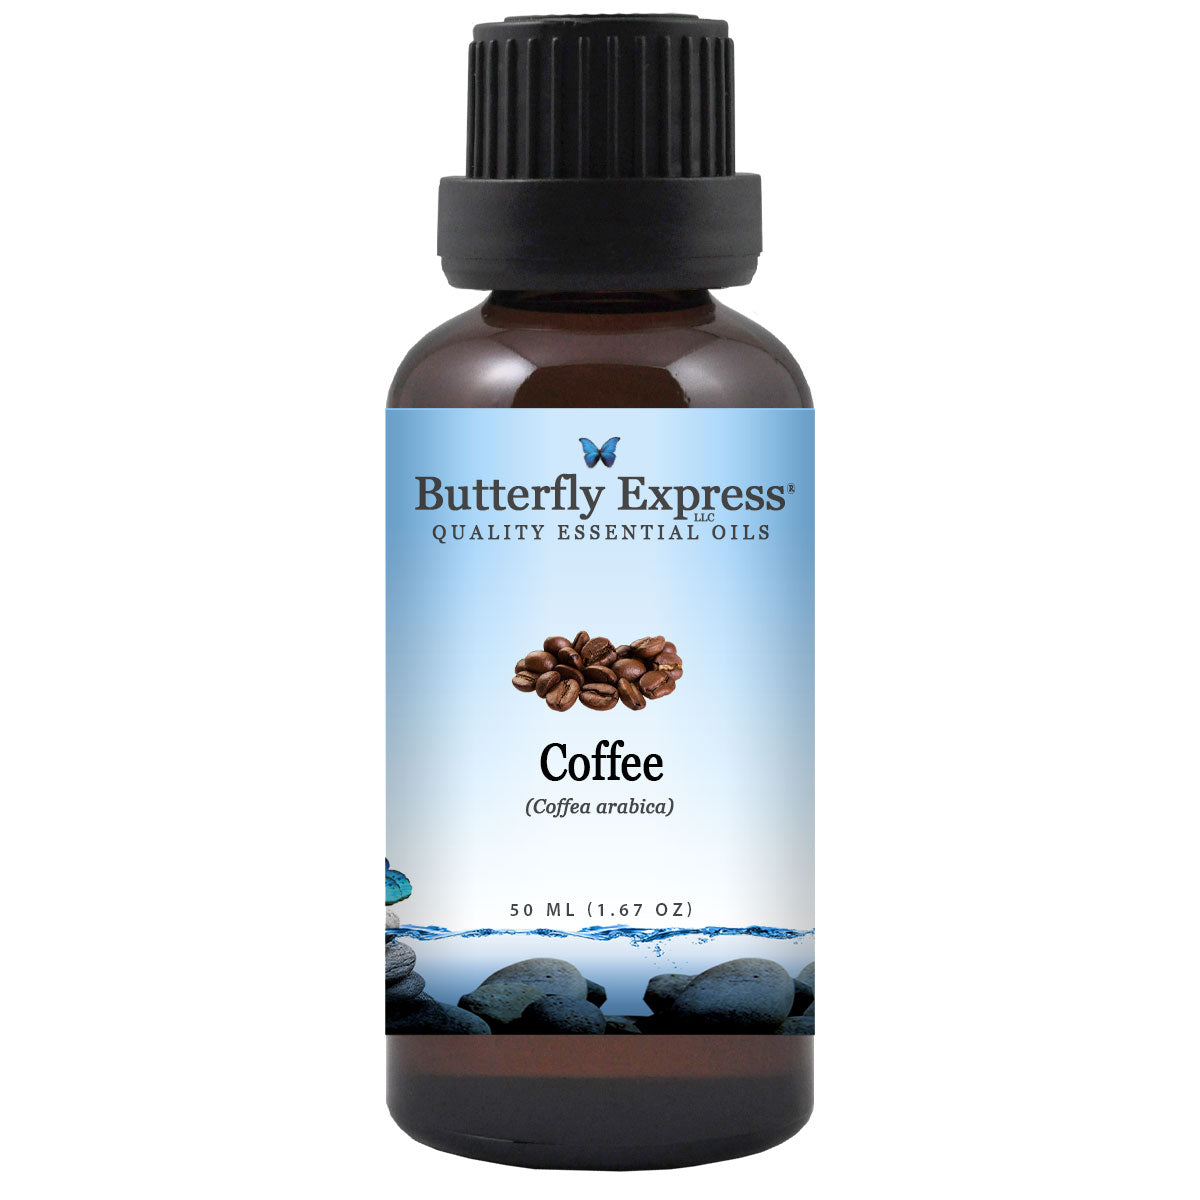 Coffee Essential Oil, Coffee Essential Oil For Aromatherapy